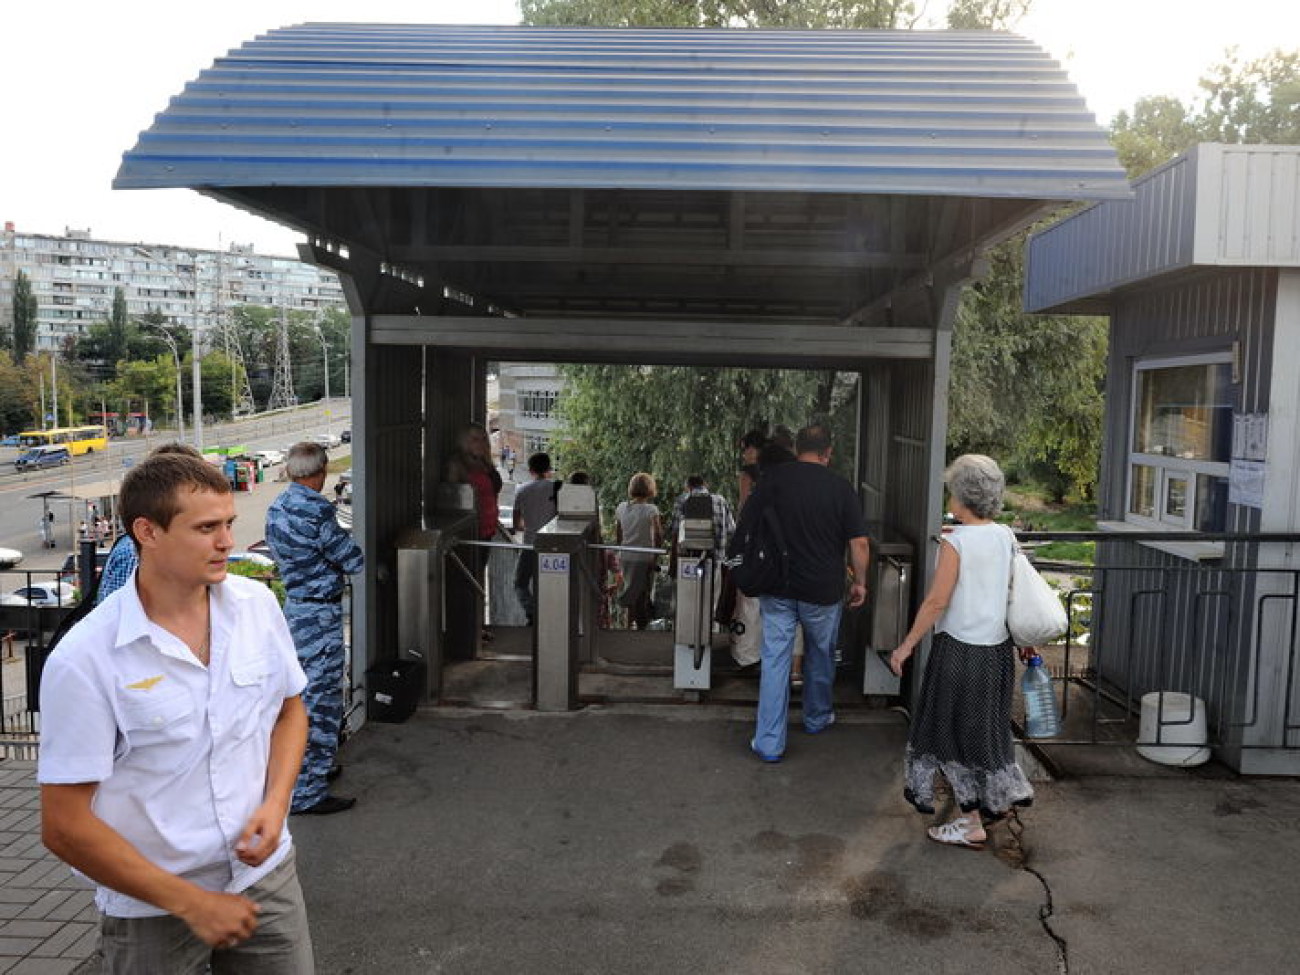 Заместитель Попова ознакомился с городской электричкой, 14 августа 2013г.